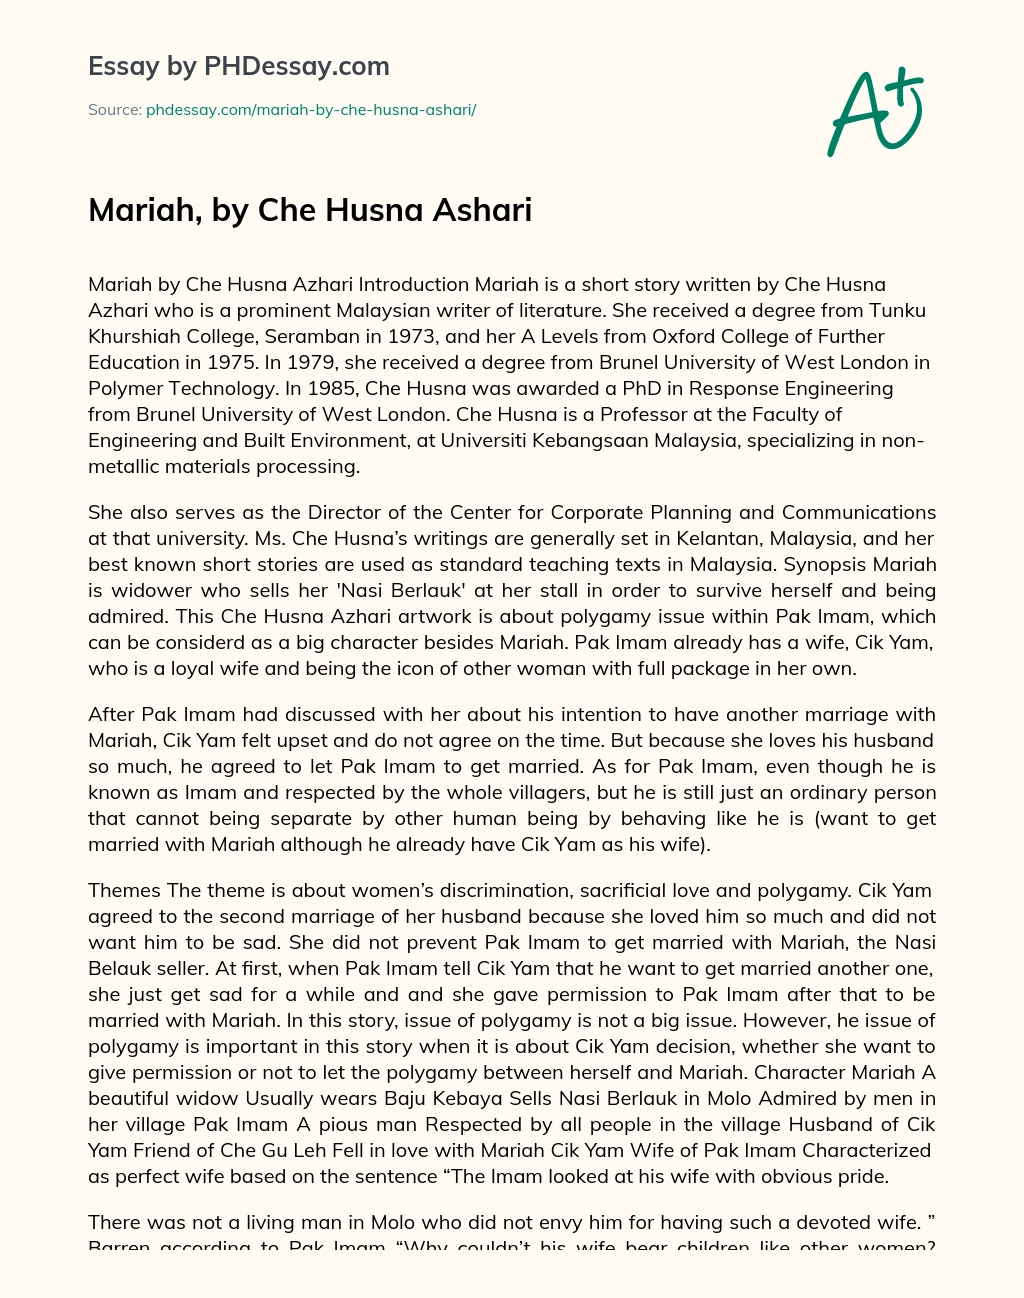 Mariah, by Che Husna Ashari essay